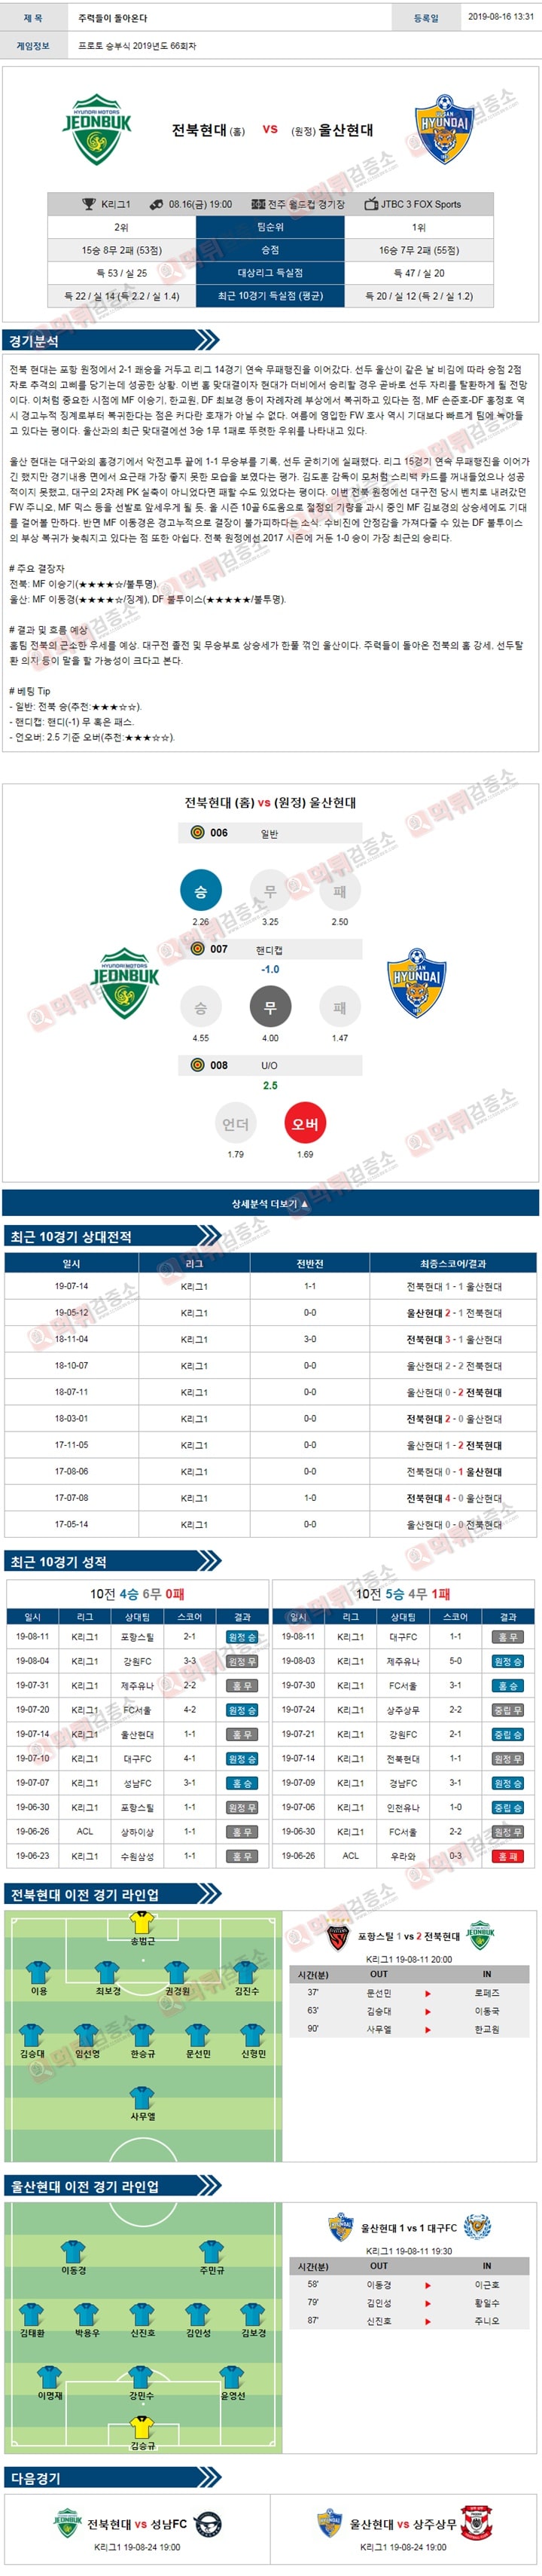 분석픽 K리그1 8월 16일 전북 울산 먹튀검증소 분석픽